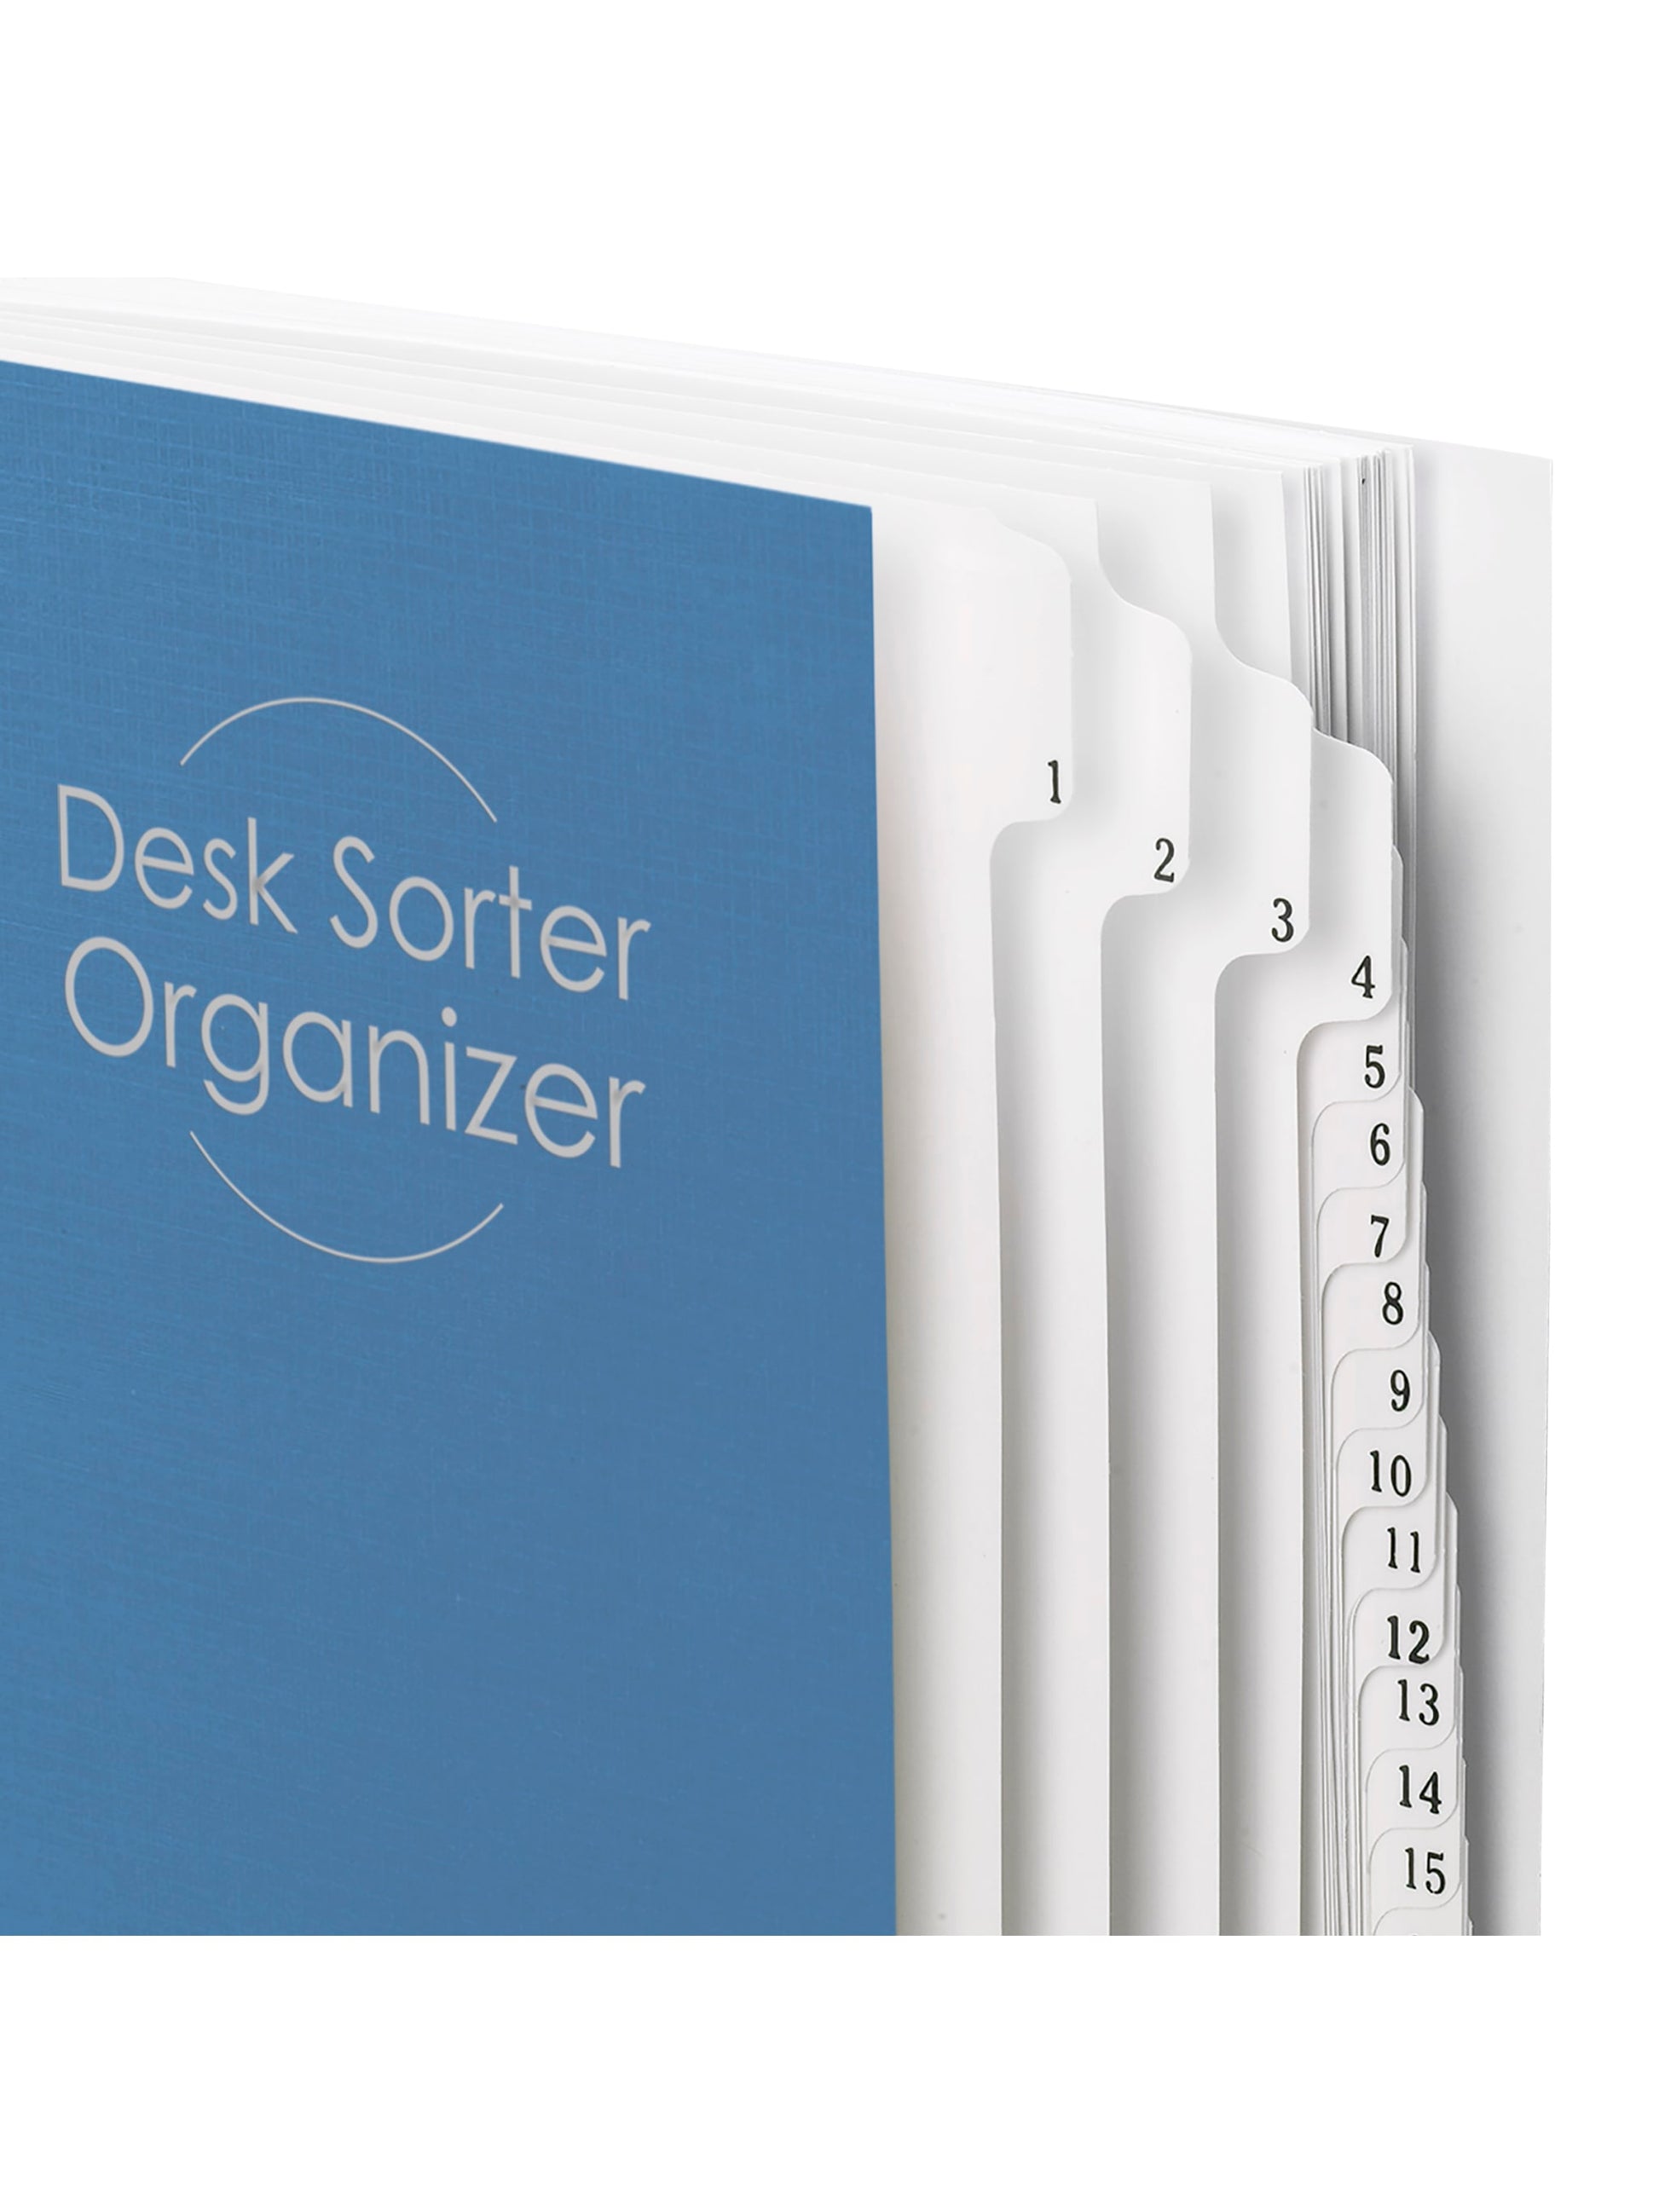 Desk File/Sorters, Dark Blue Color, Letter Size, Set of 1, 086486892940